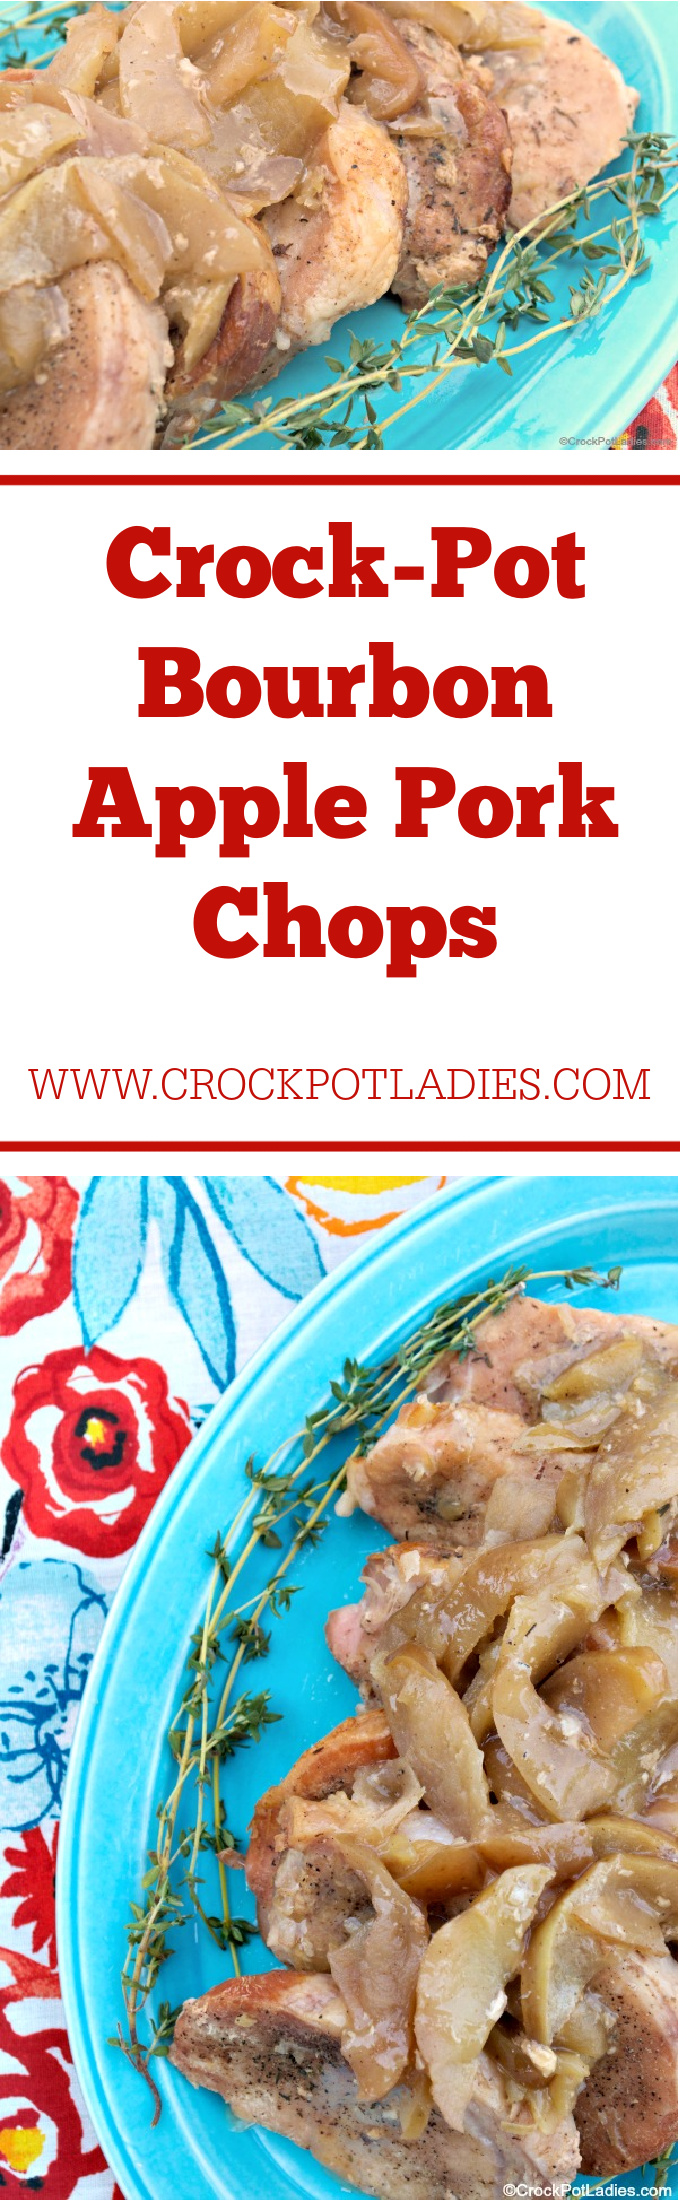 Crock-Pot Bourbon Apple Pork Chops